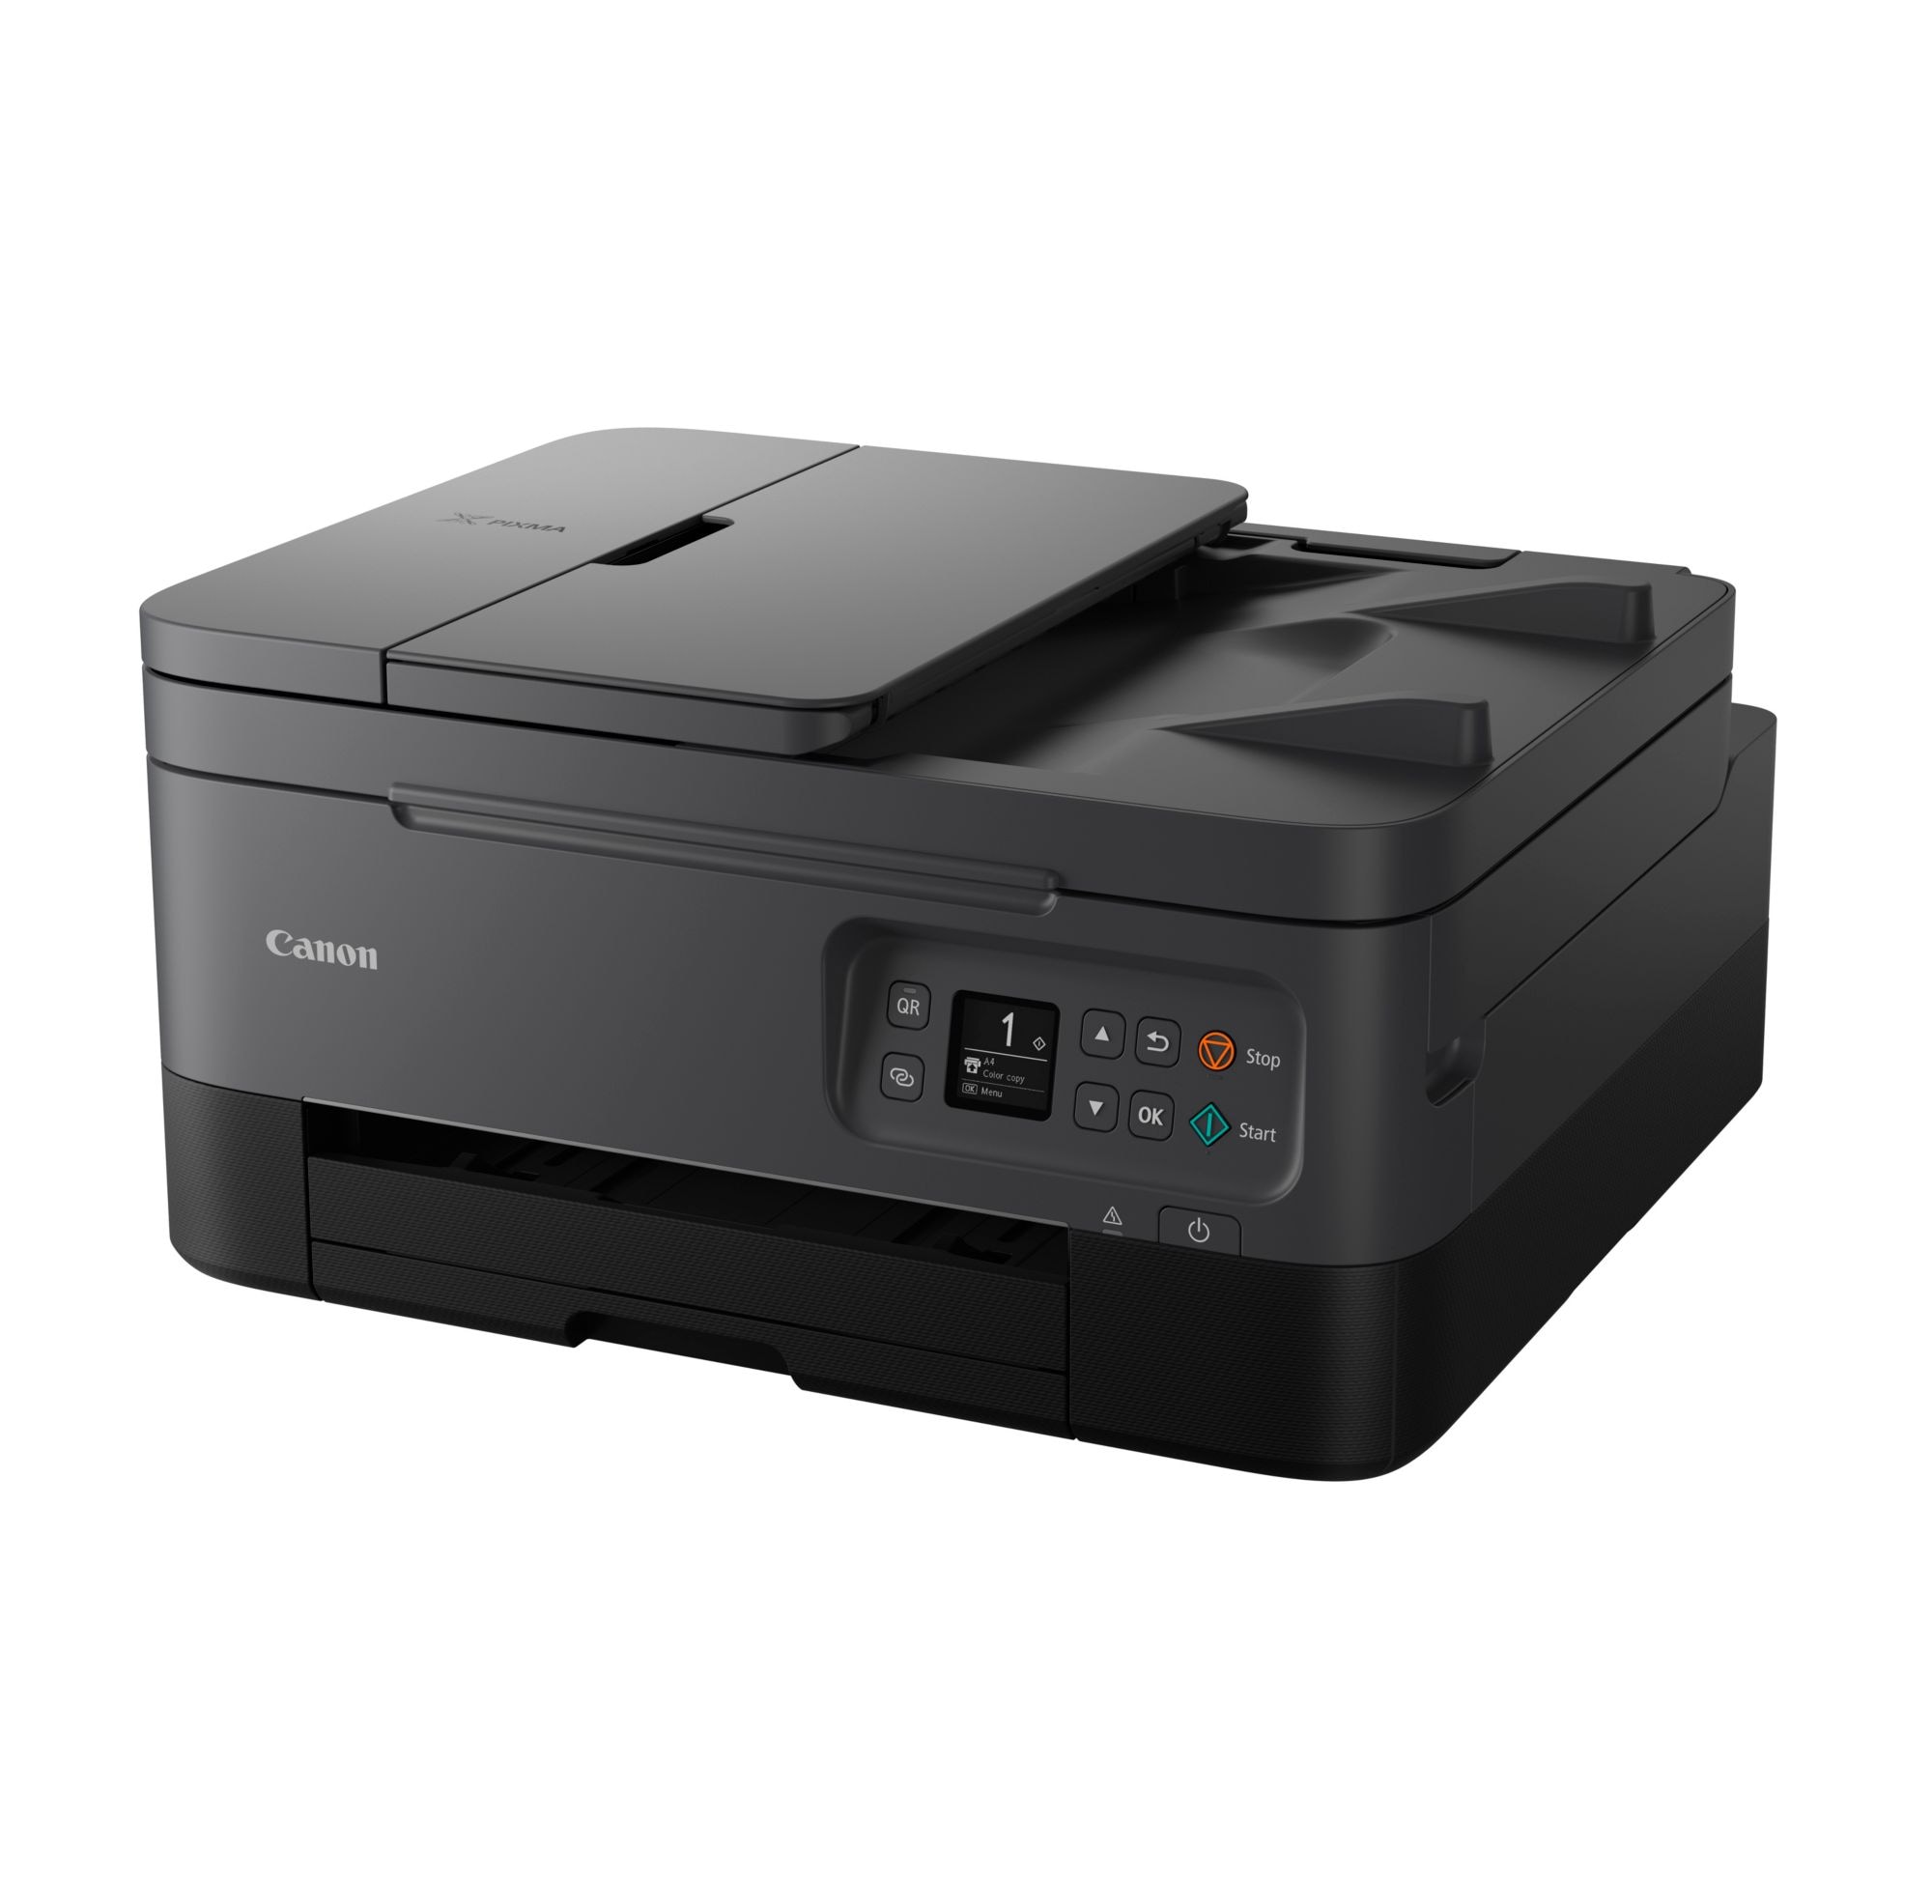 Canon Kopierer WLAN Cyberport ++ TS7450a Scanner PIXMA Tintenstrahl-Multifunktionsdrucker